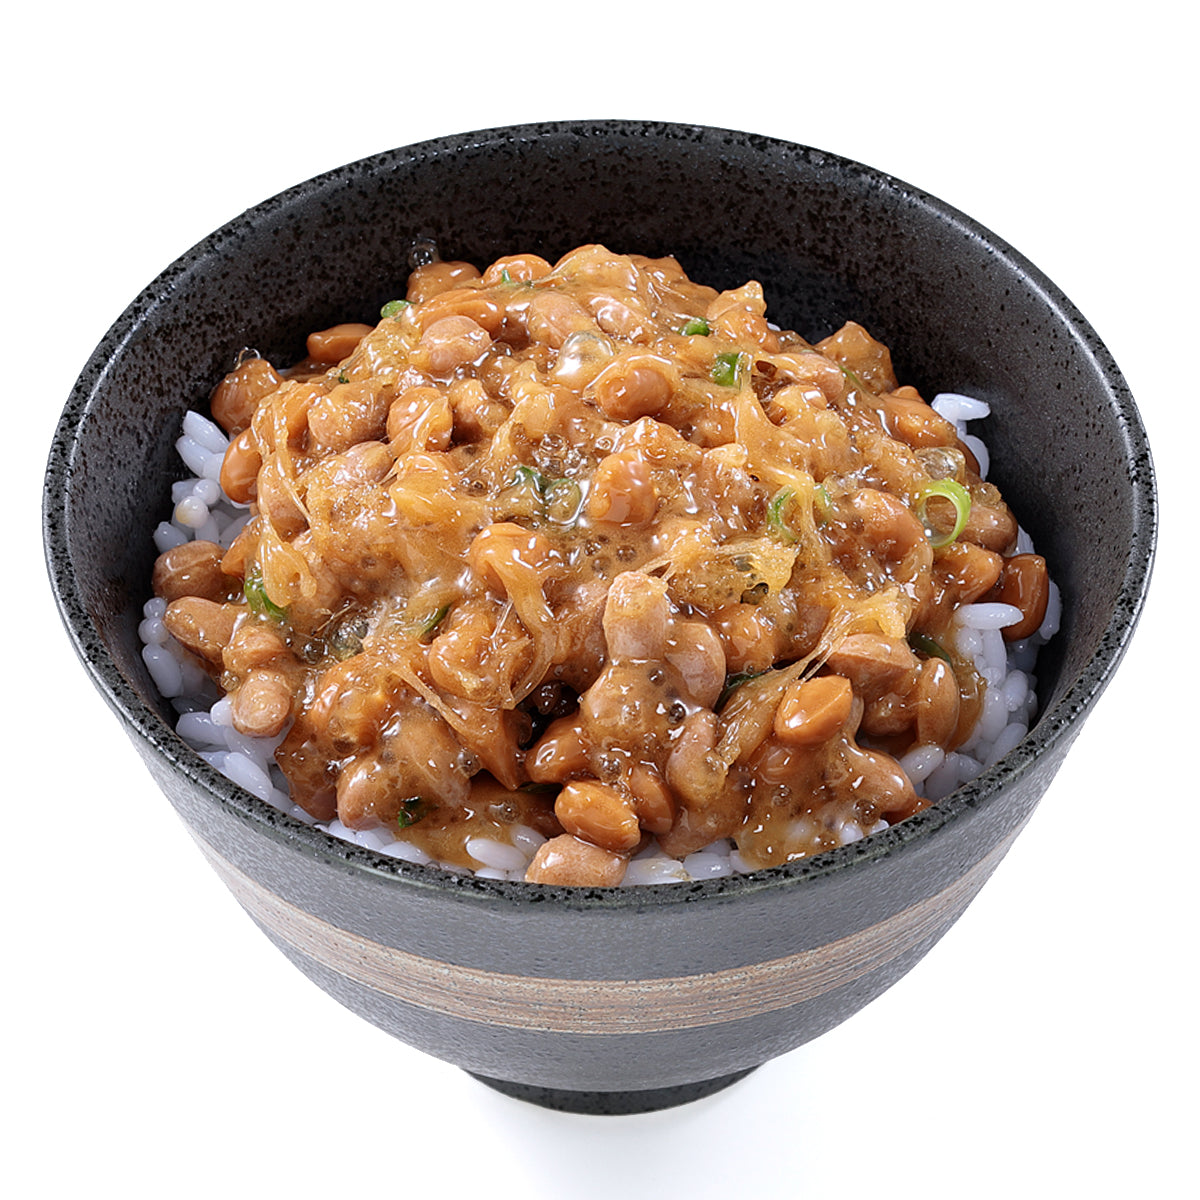 オリジナル食品サンプル「納豆ごはん」の商品画像です。(英語表記) natto rica / Natto（Fermented Soybeans） is sticky and has a unique smell. 